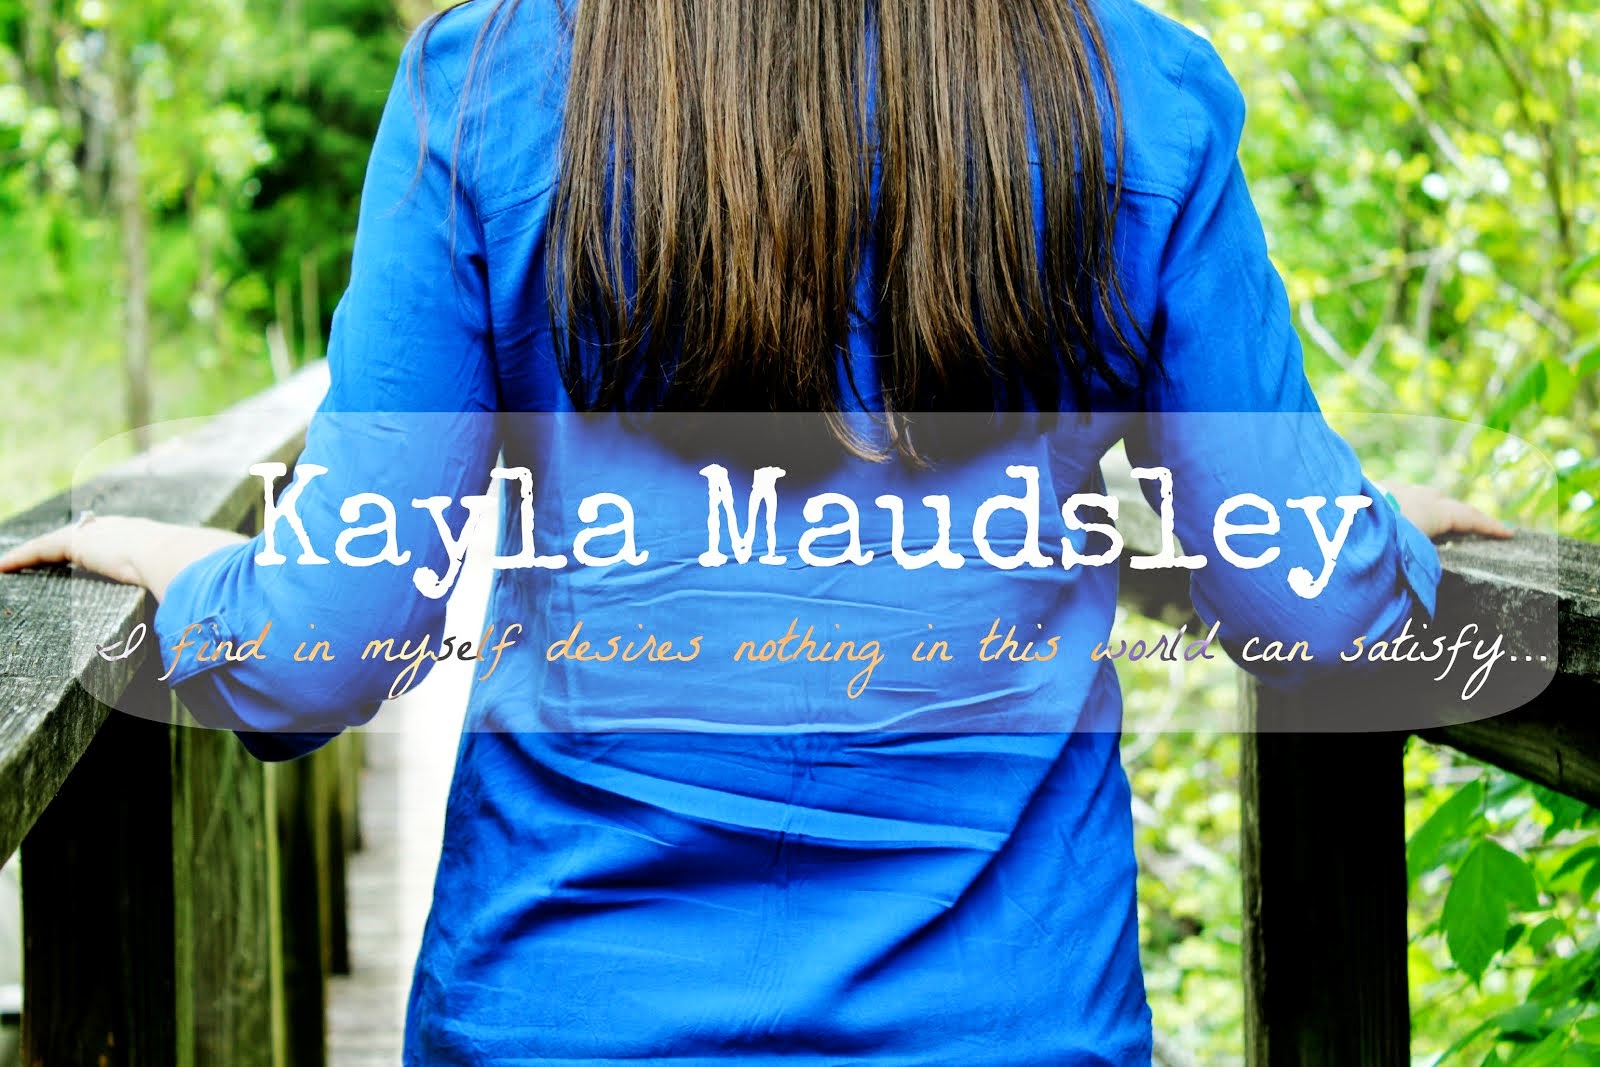 Kayla Maudsley